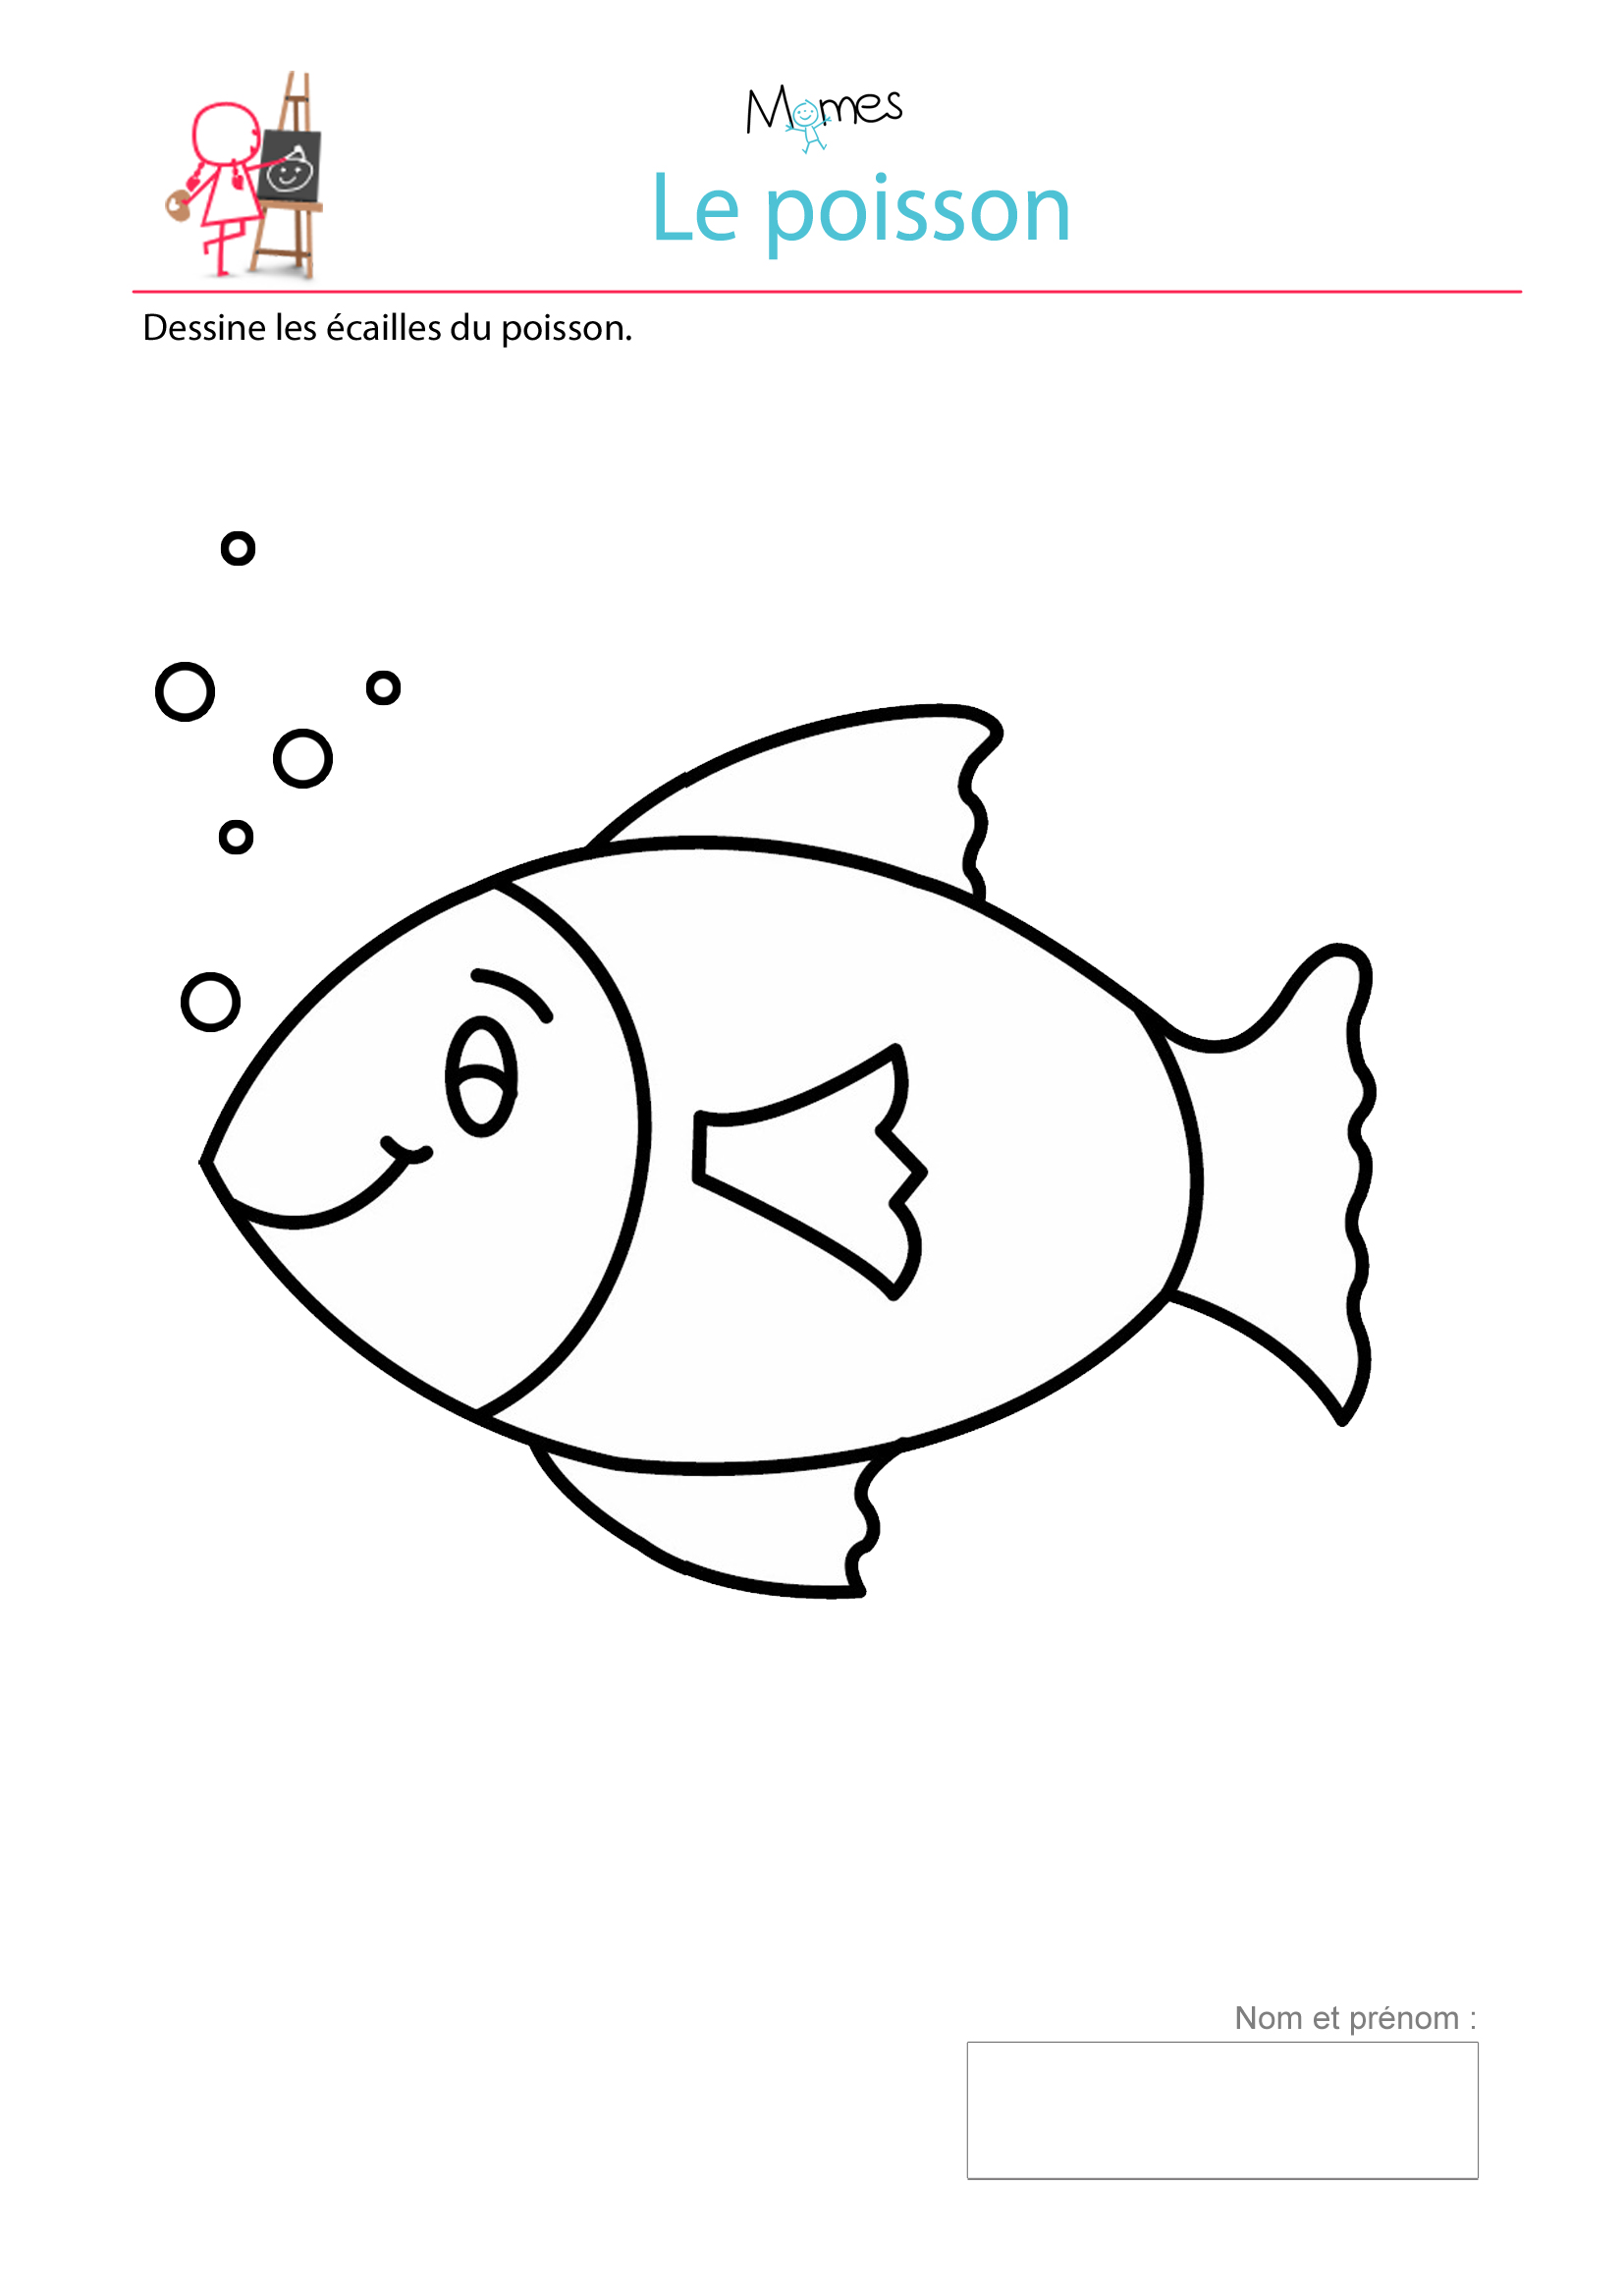 Modèle de poisson à imprimer - Dessiner les écailles | MOMES.net